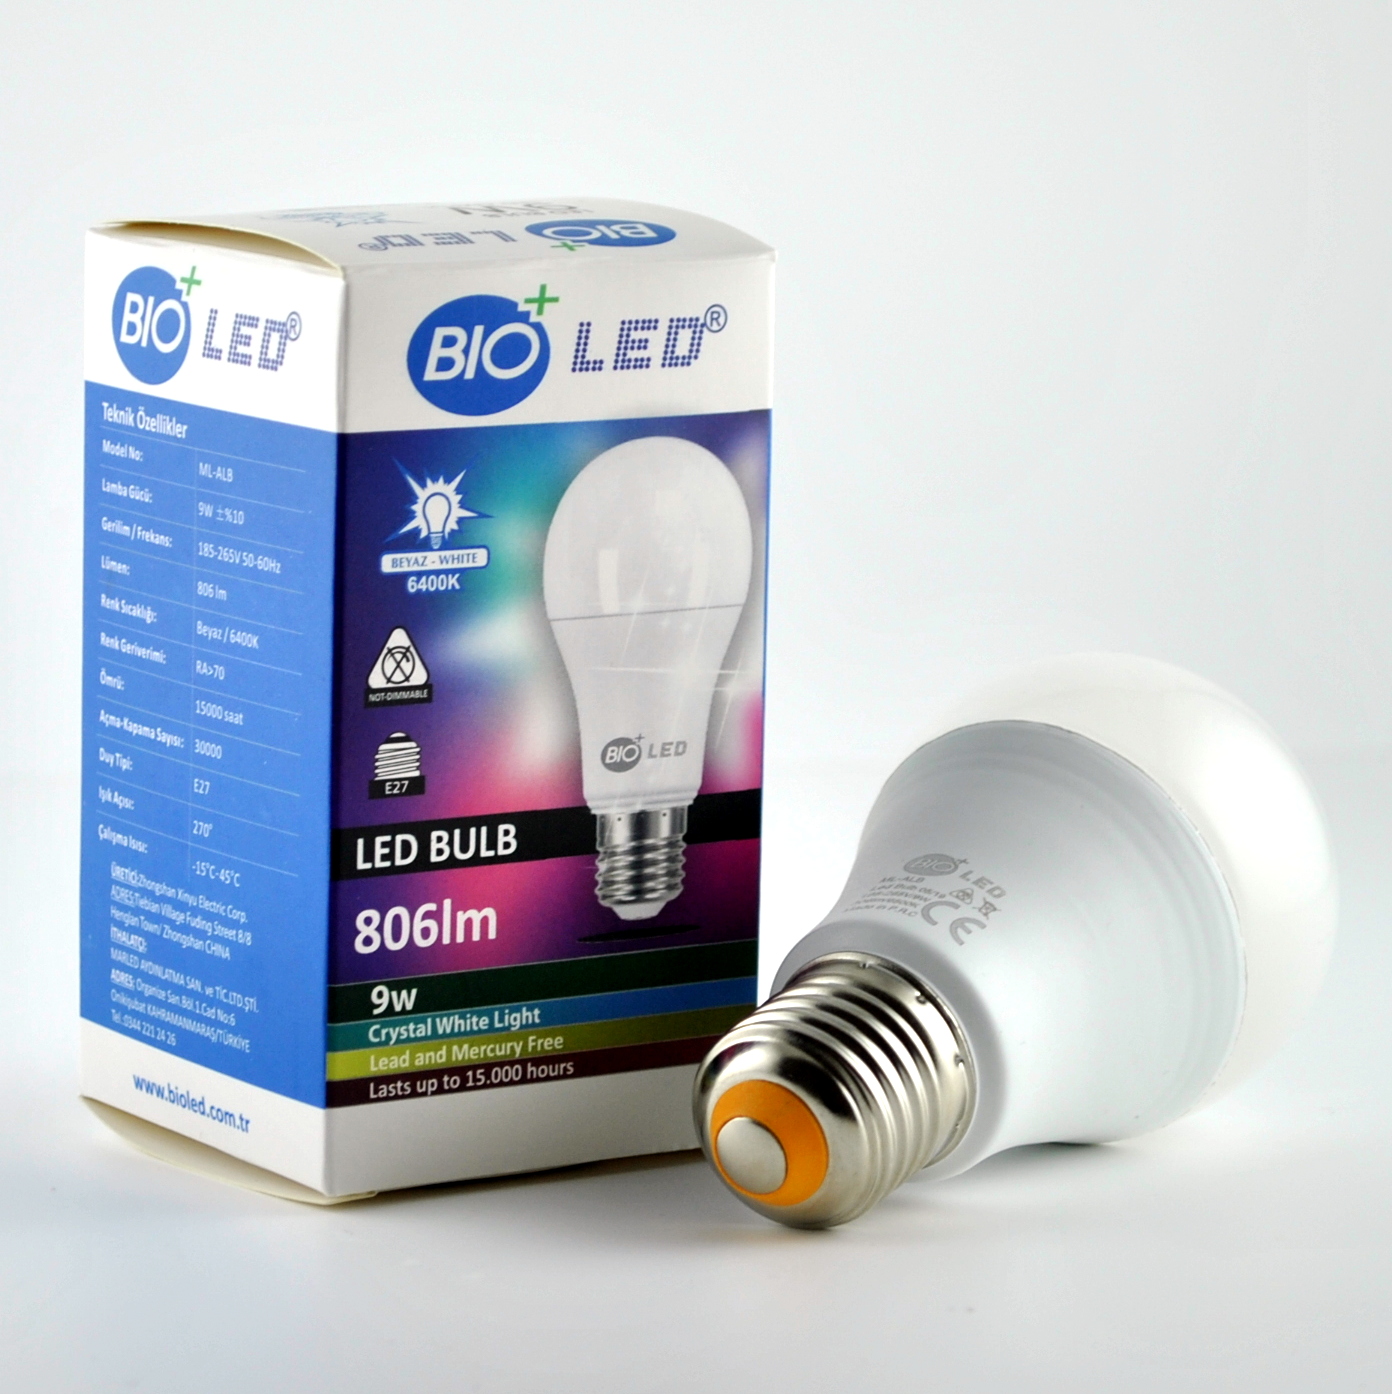 Bioled- Innovative Led Lighting Manufacturer 2021